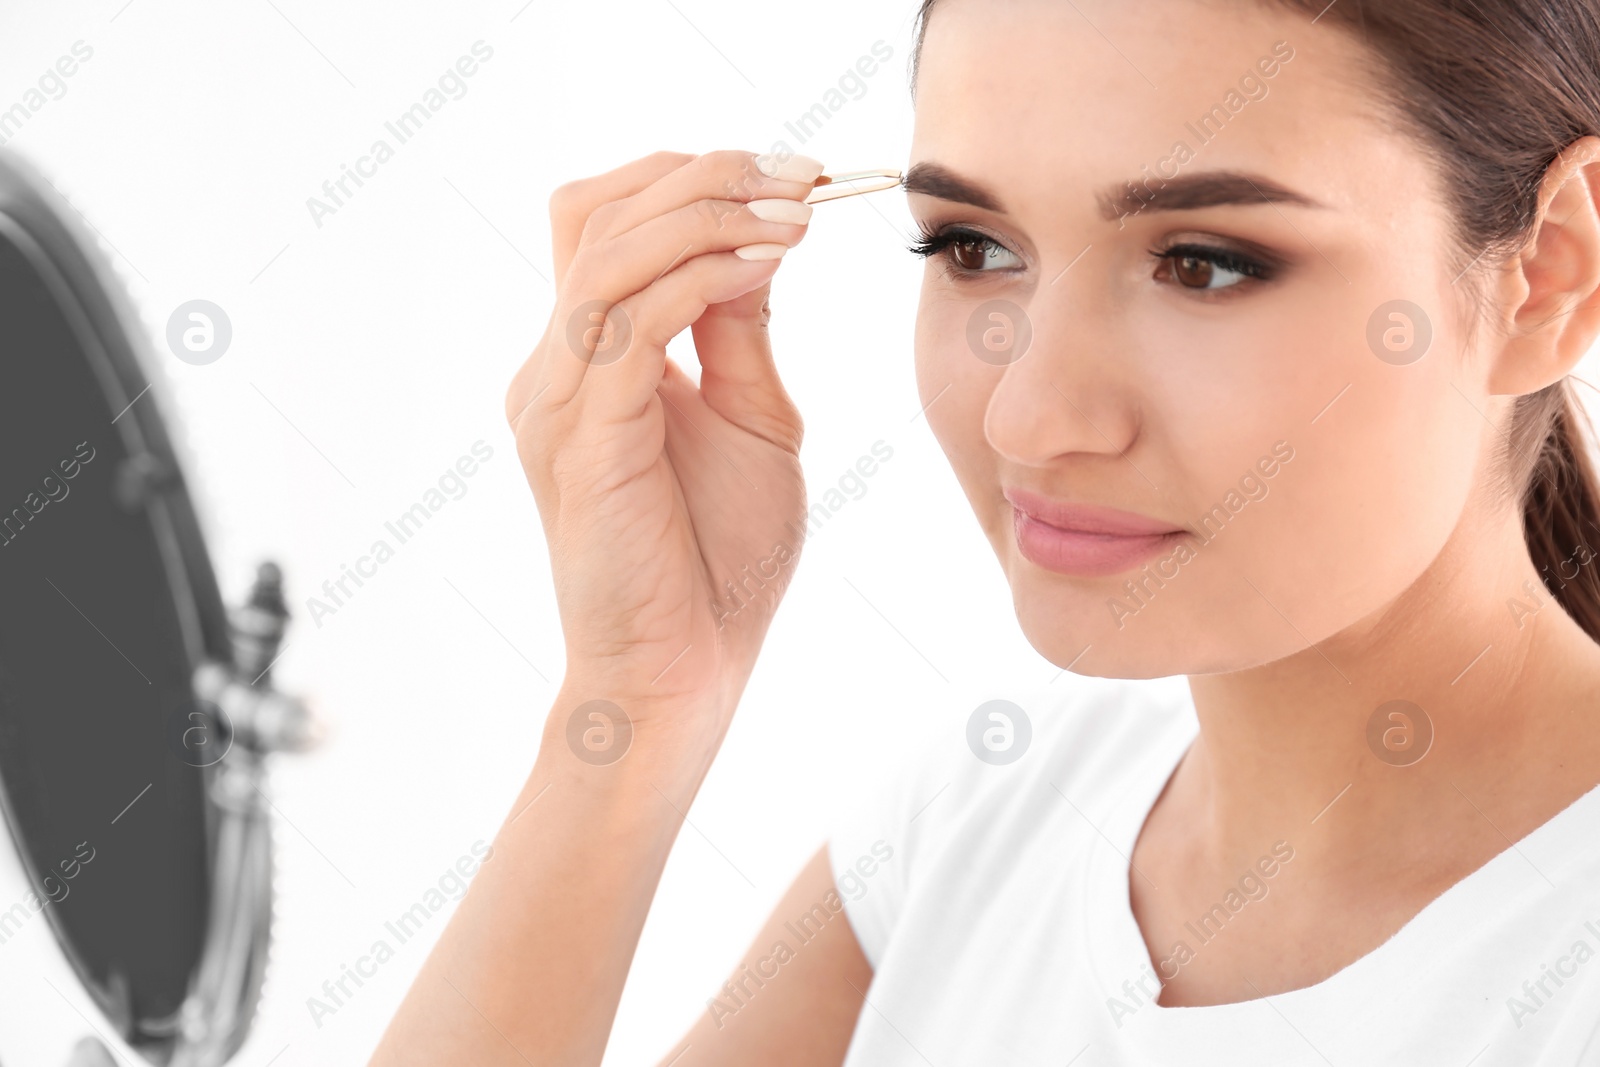 Photo of Young woman plucking eyebrow with tweezers, indoors